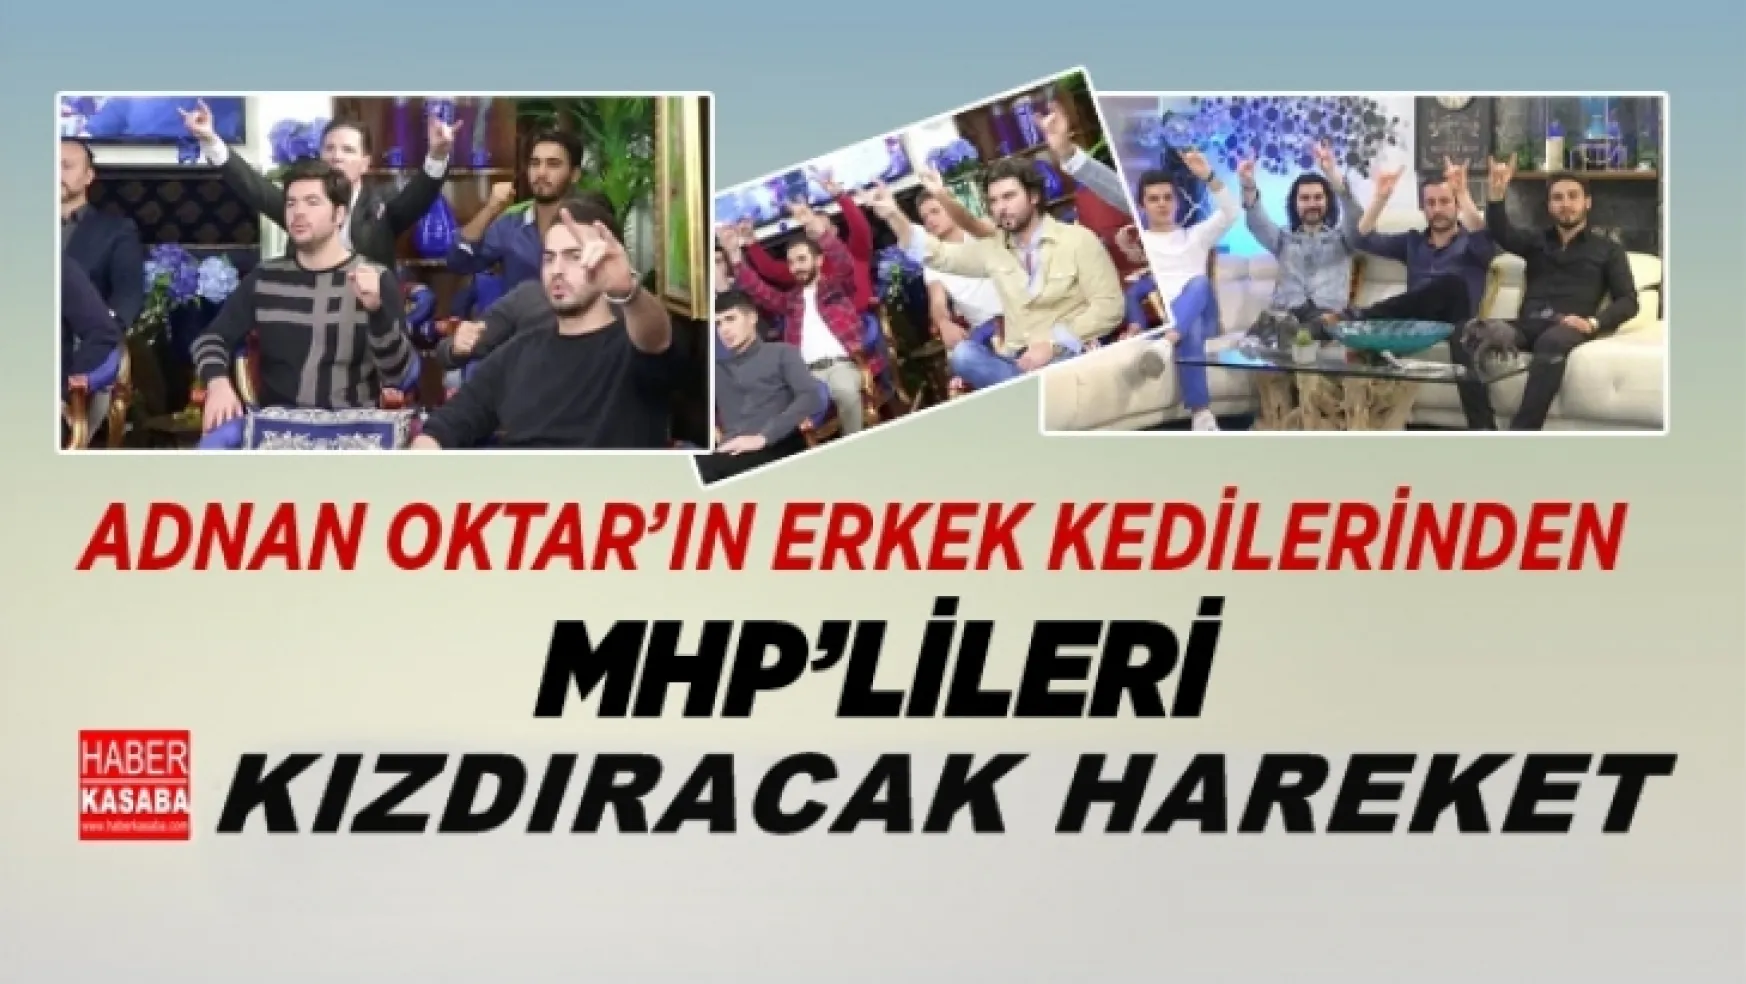 Adnan Oktar'ın erkek kedilerinden MHP'lileri kızdıracak hareket geldi